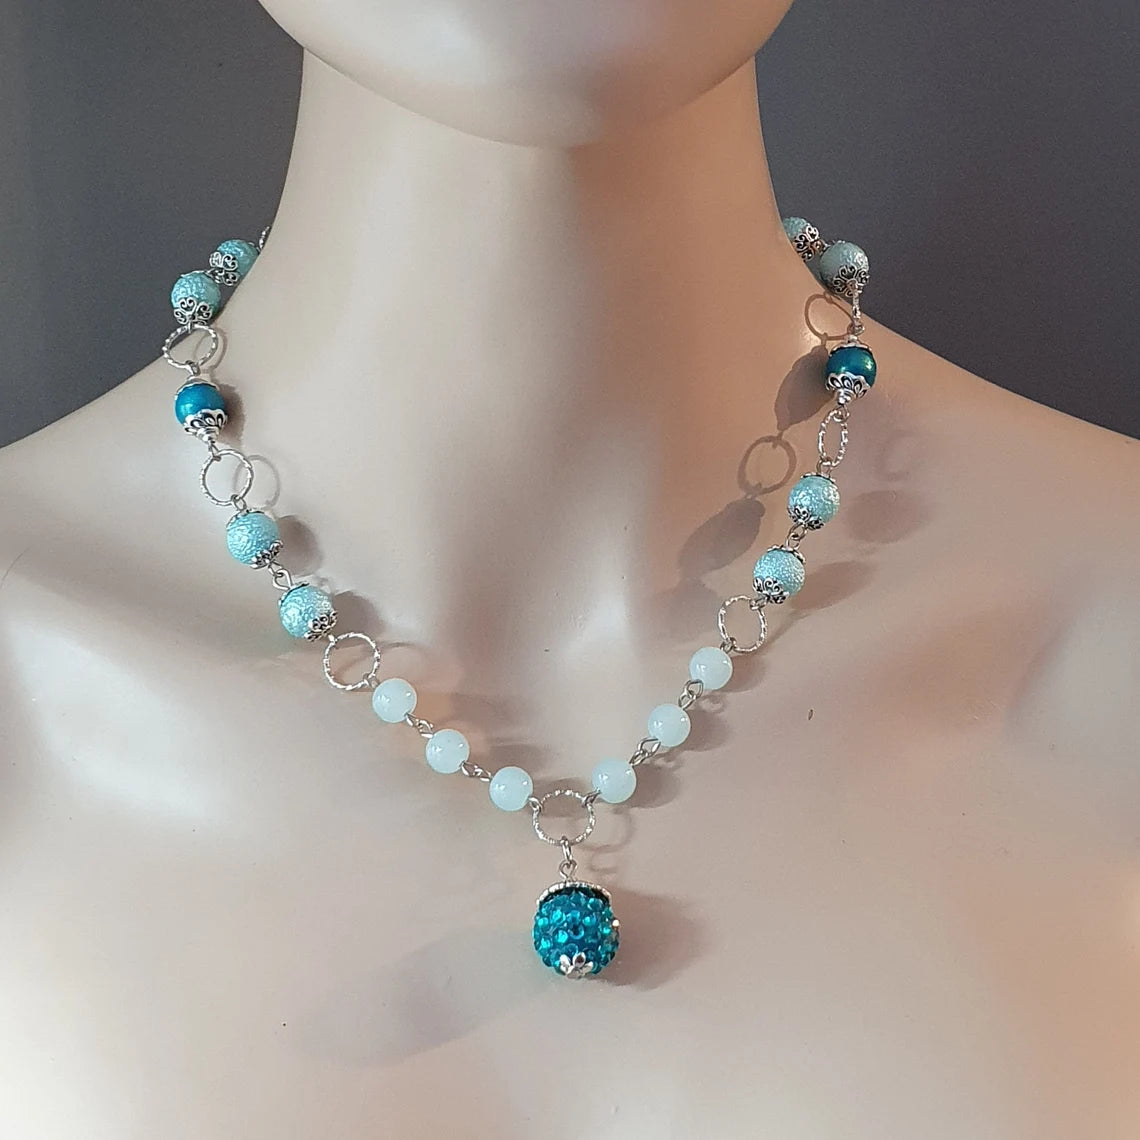 Handgefertigte Halskette mit Shamballa Bead in, Wasserblau, sowie farblich passende Glasperlen, Unikat